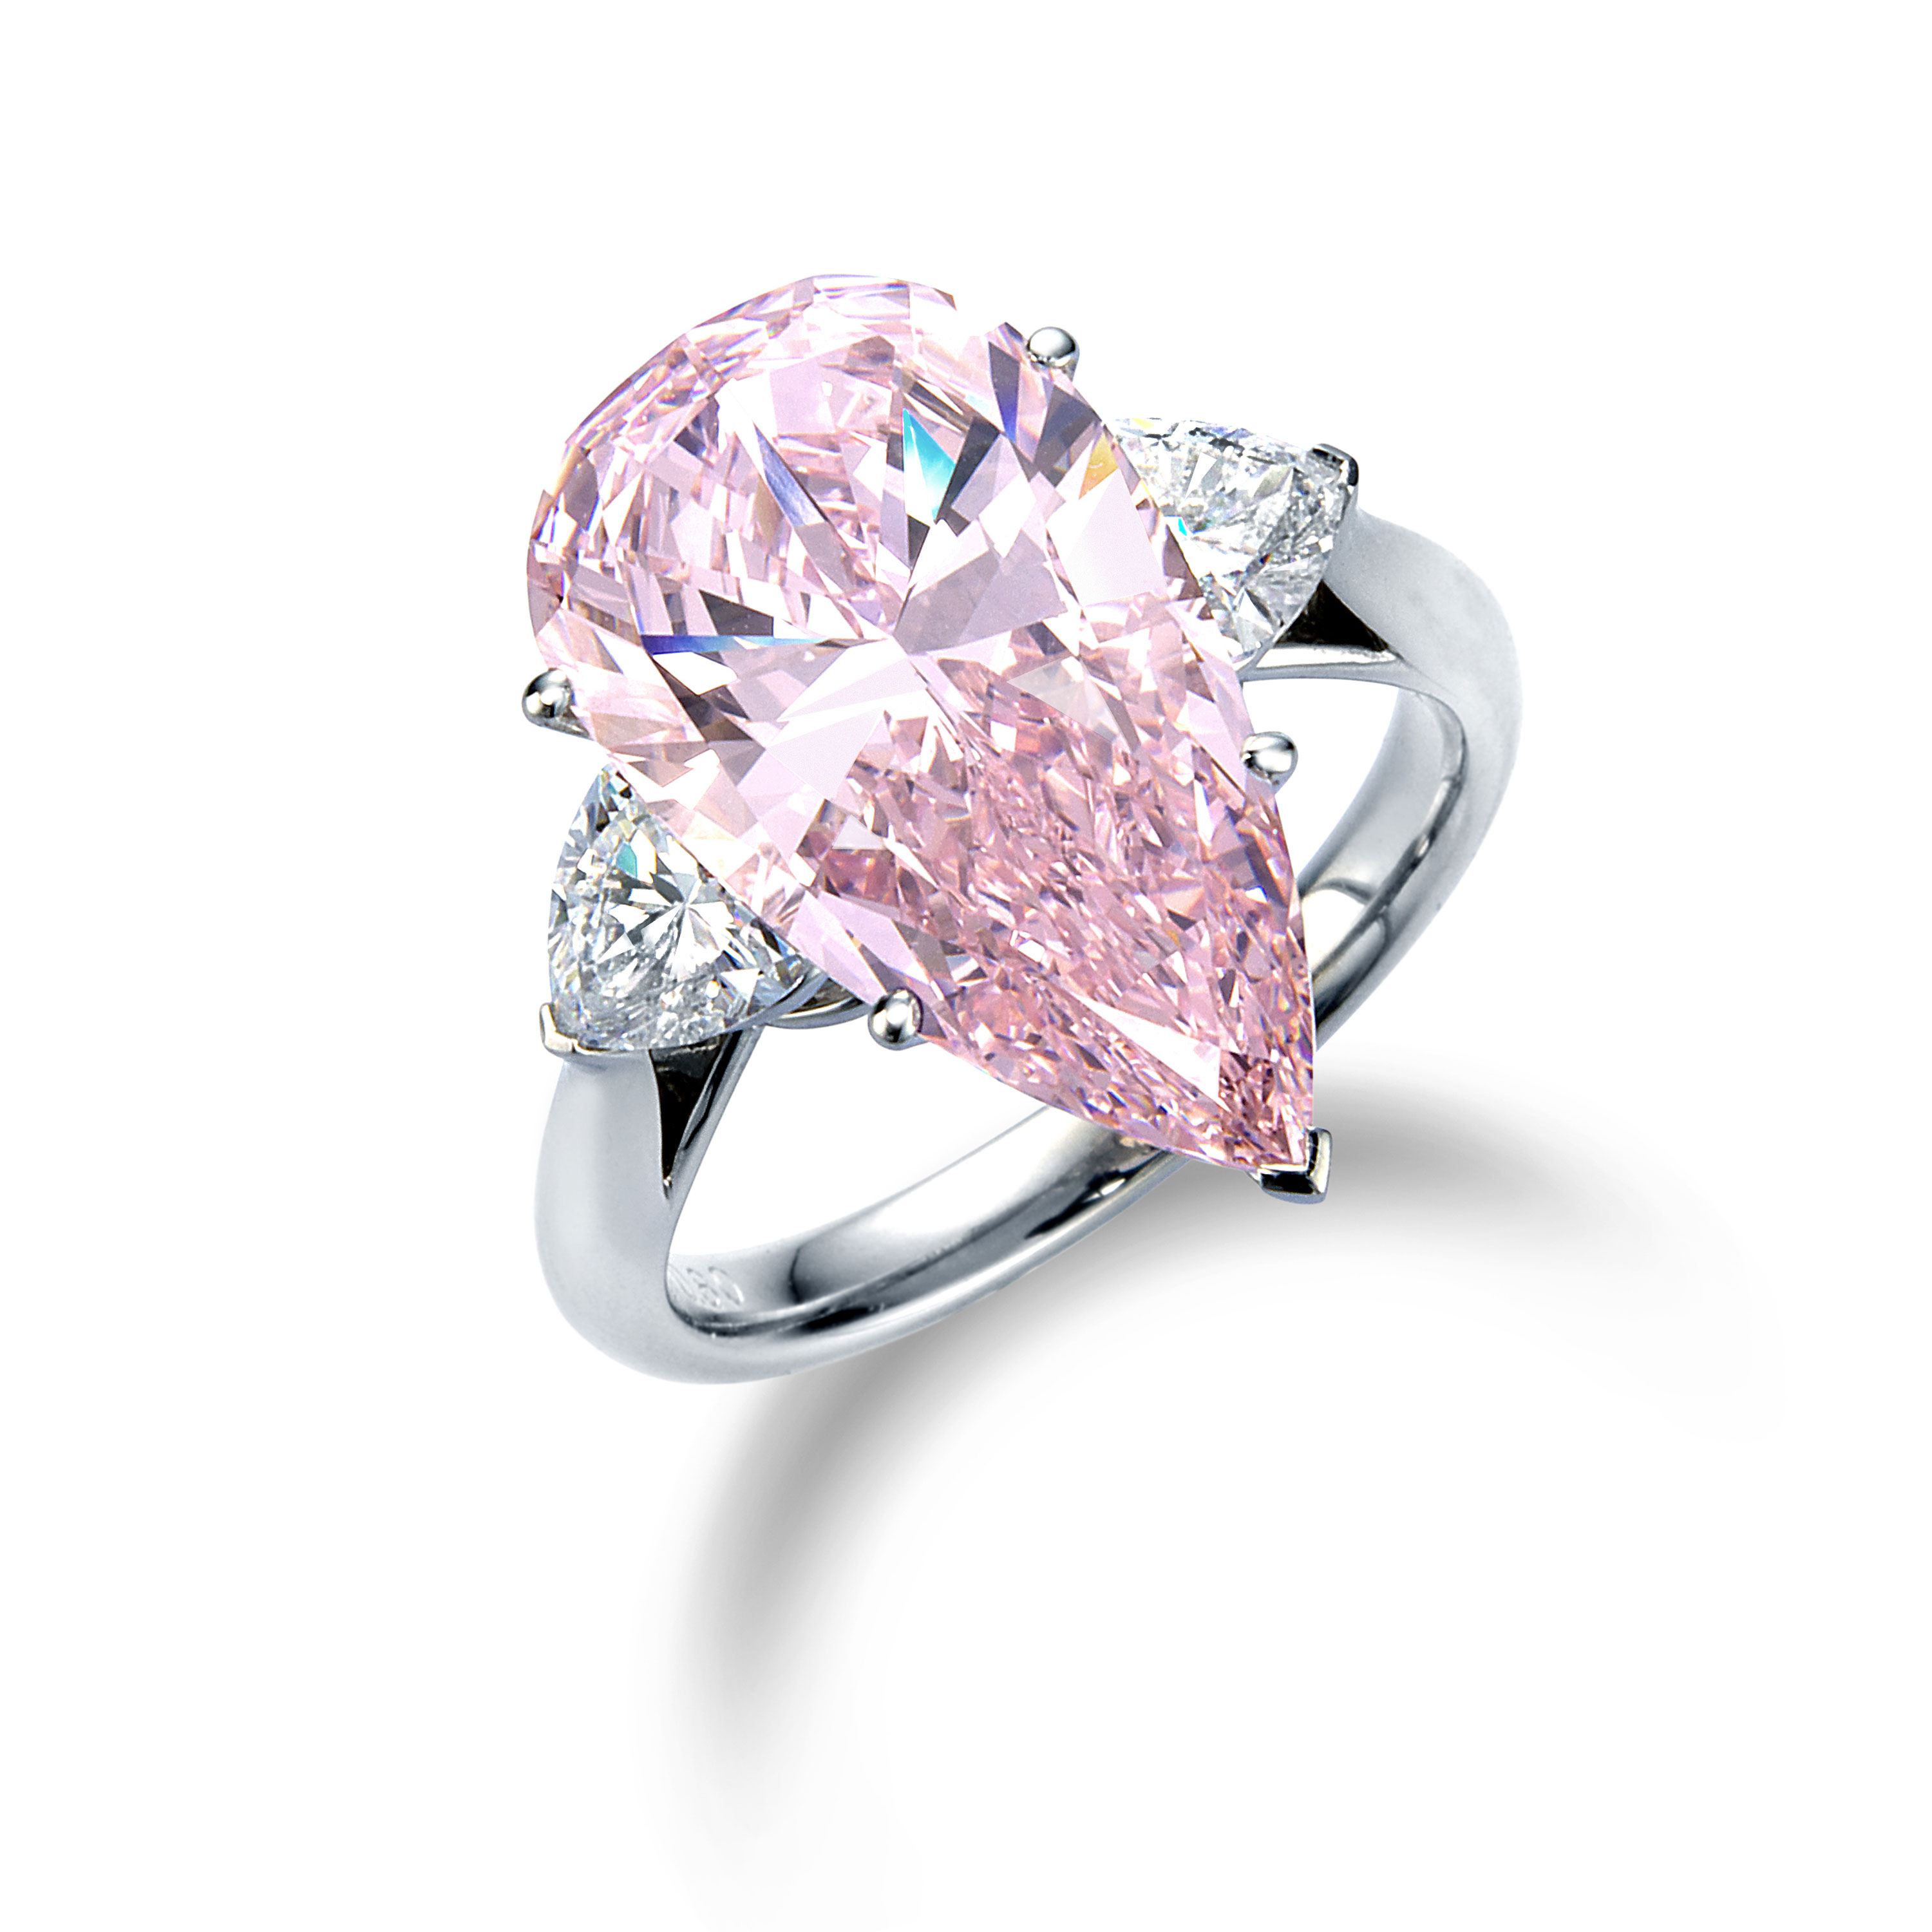 ピンクダイヤモンドの希少性と今後について | NEWS | UYEDA 